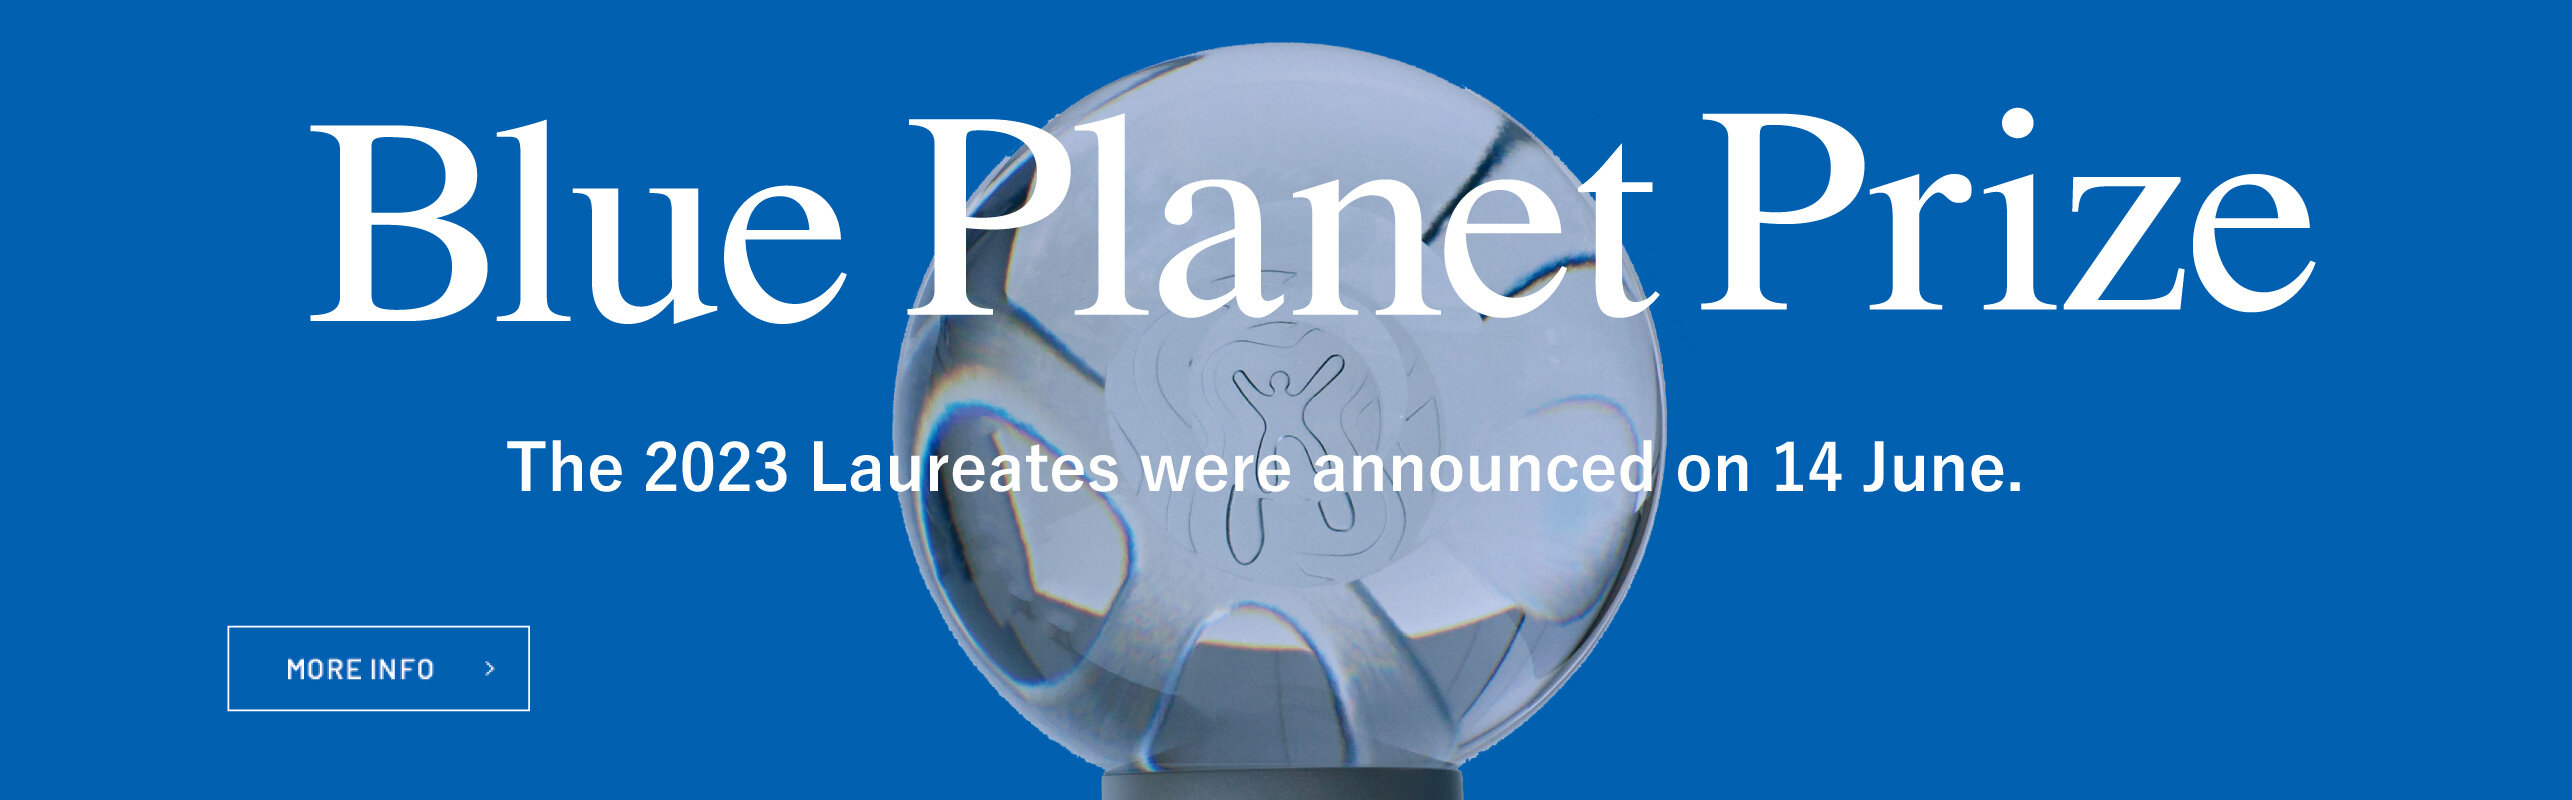 Announcing the 2023 Blue Planet Prize Laureates